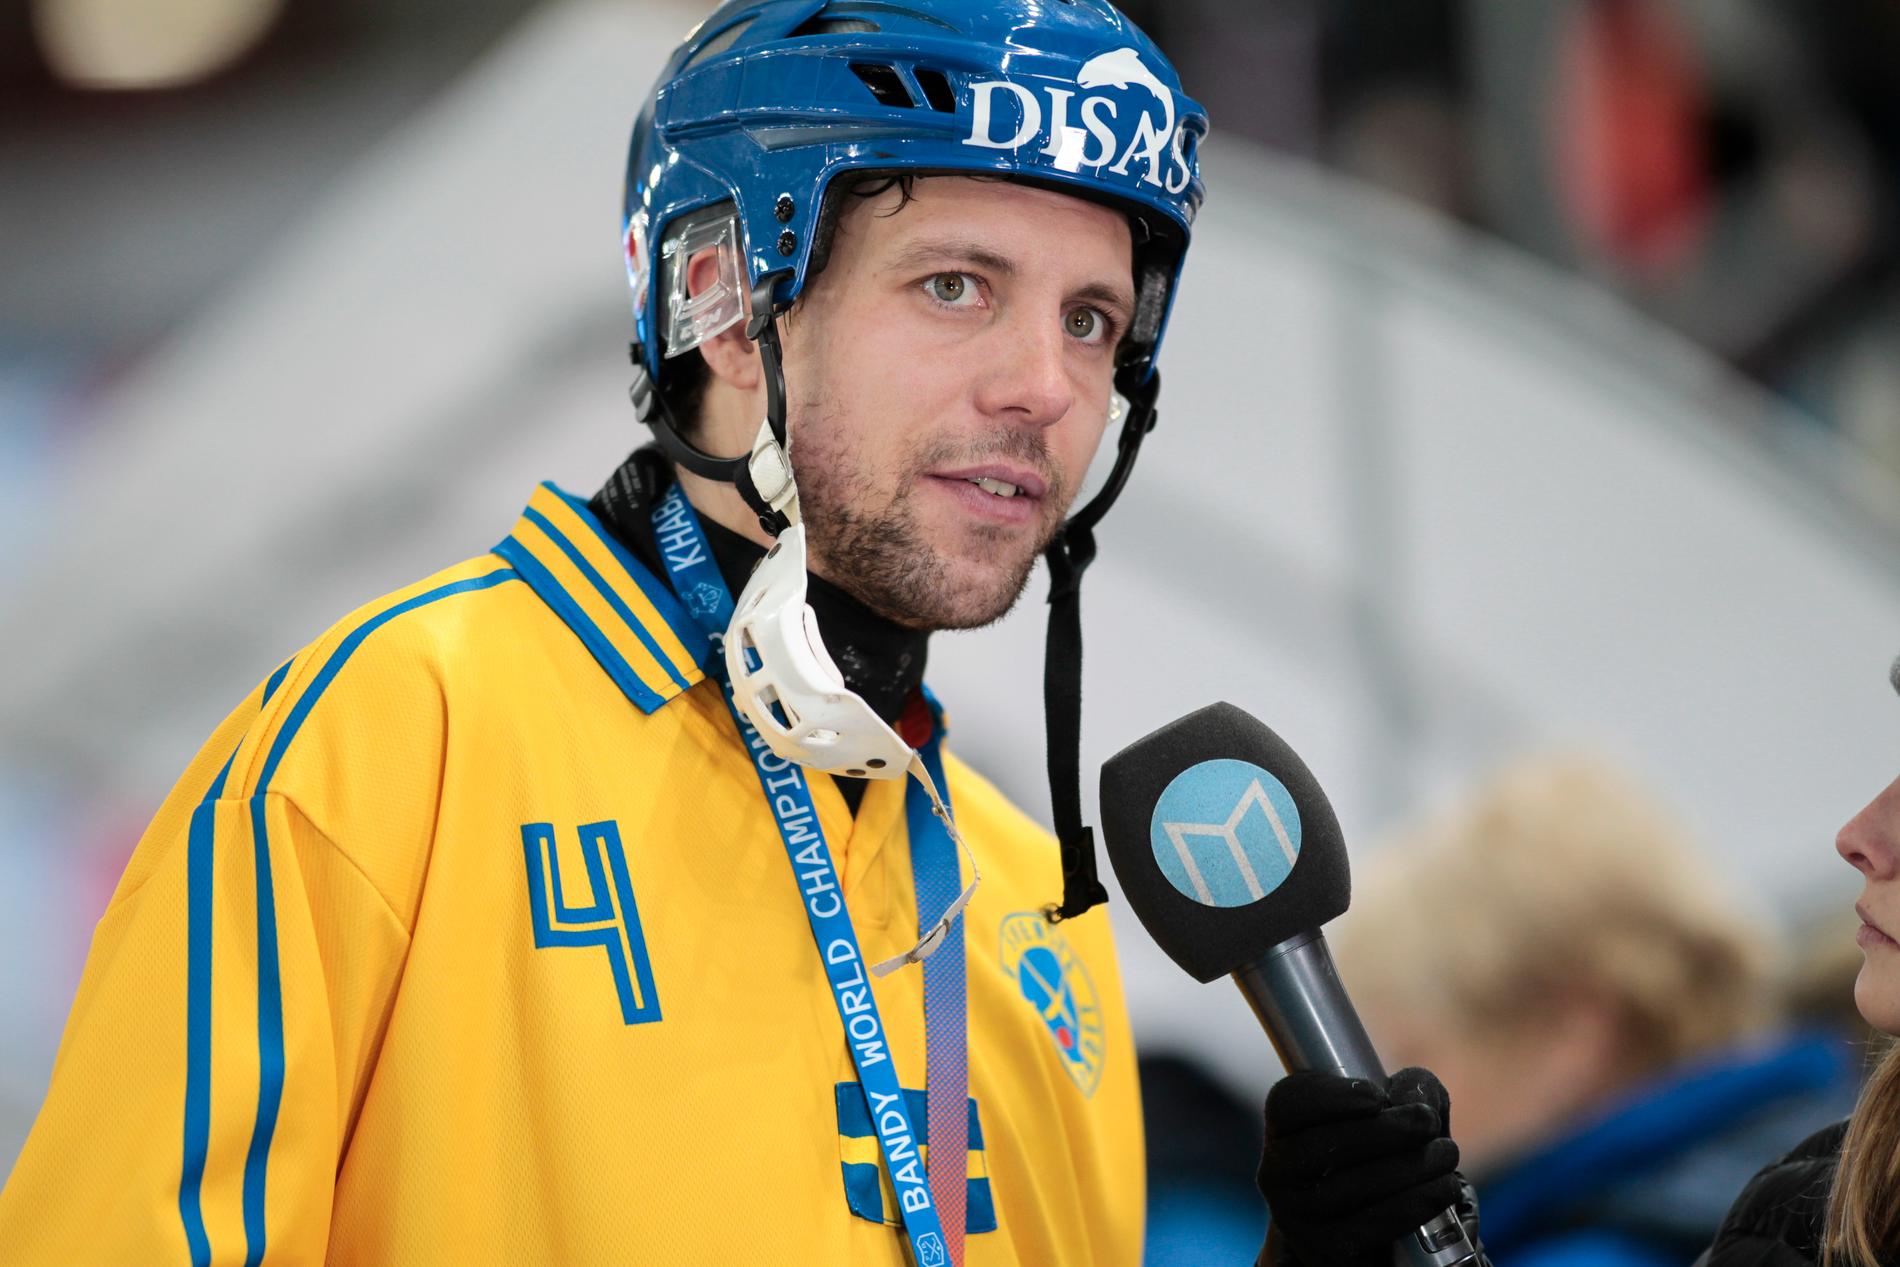 Per Hellmyrs intervjuas efter förlusten i VM-finalen i bandy mellan Ryssland och Sverige.